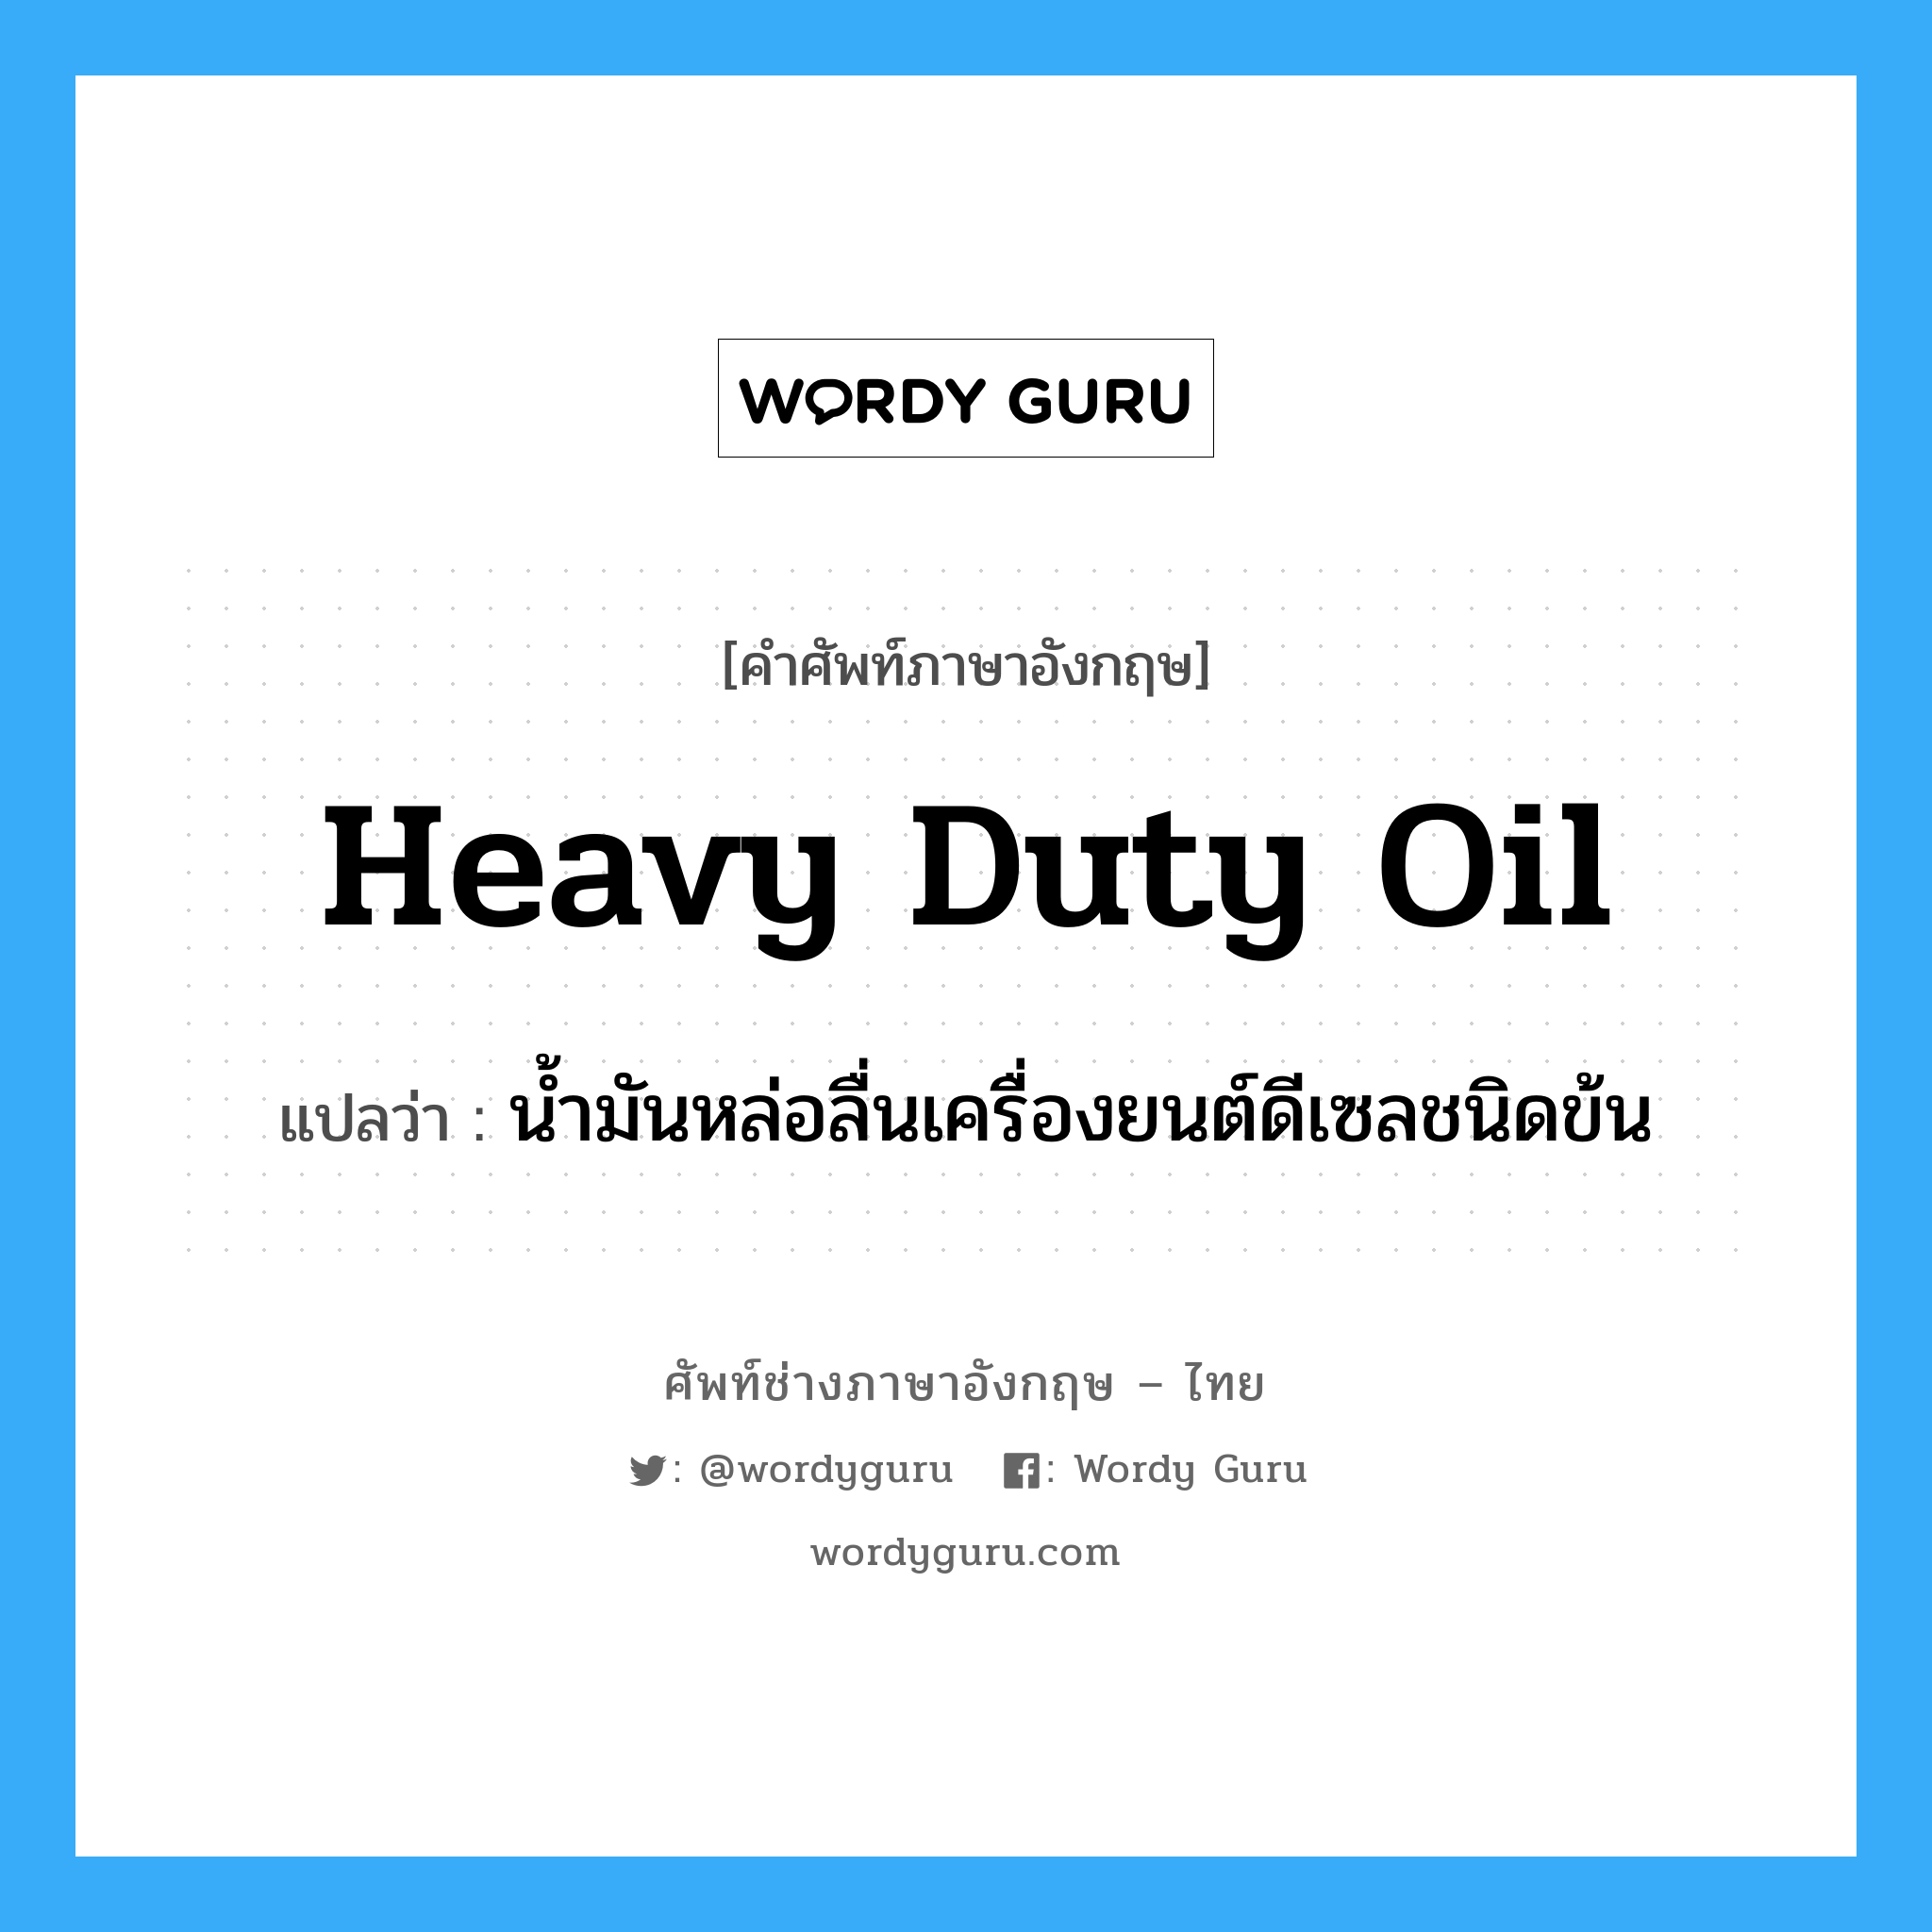 heavy duty oil แปลว่า?, คำศัพท์ช่างภาษาอังกฤษ - ไทย heavy duty oil คำศัพท์ภาษาอังกฤษ heavy duty oil แปลว่า น้ำมันหล่อลื่นเครื่องยนต์ดีเซลชนิดข้น